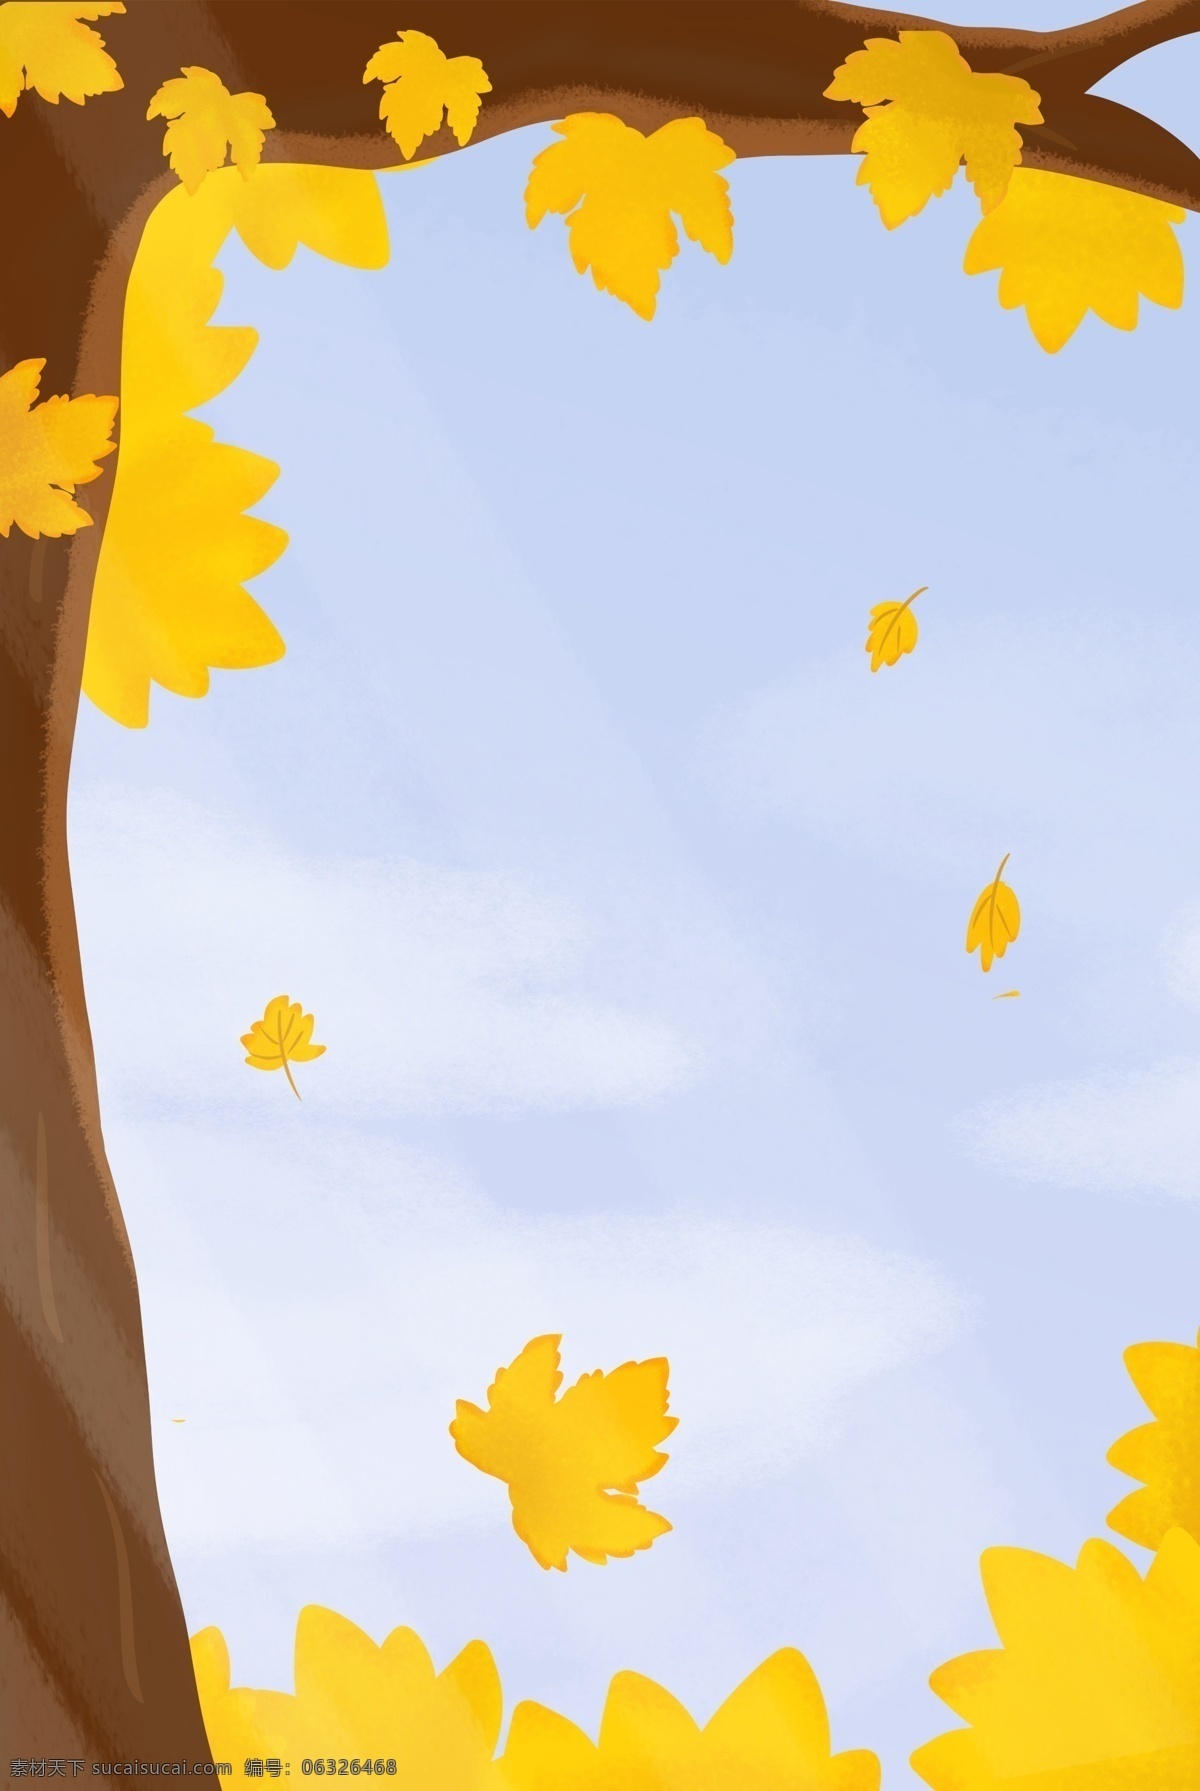 手绘 立秋 海报 背景 简约 小清新 秋季 秋天 二十四节气 落叶 金黄色 枫叶 树木